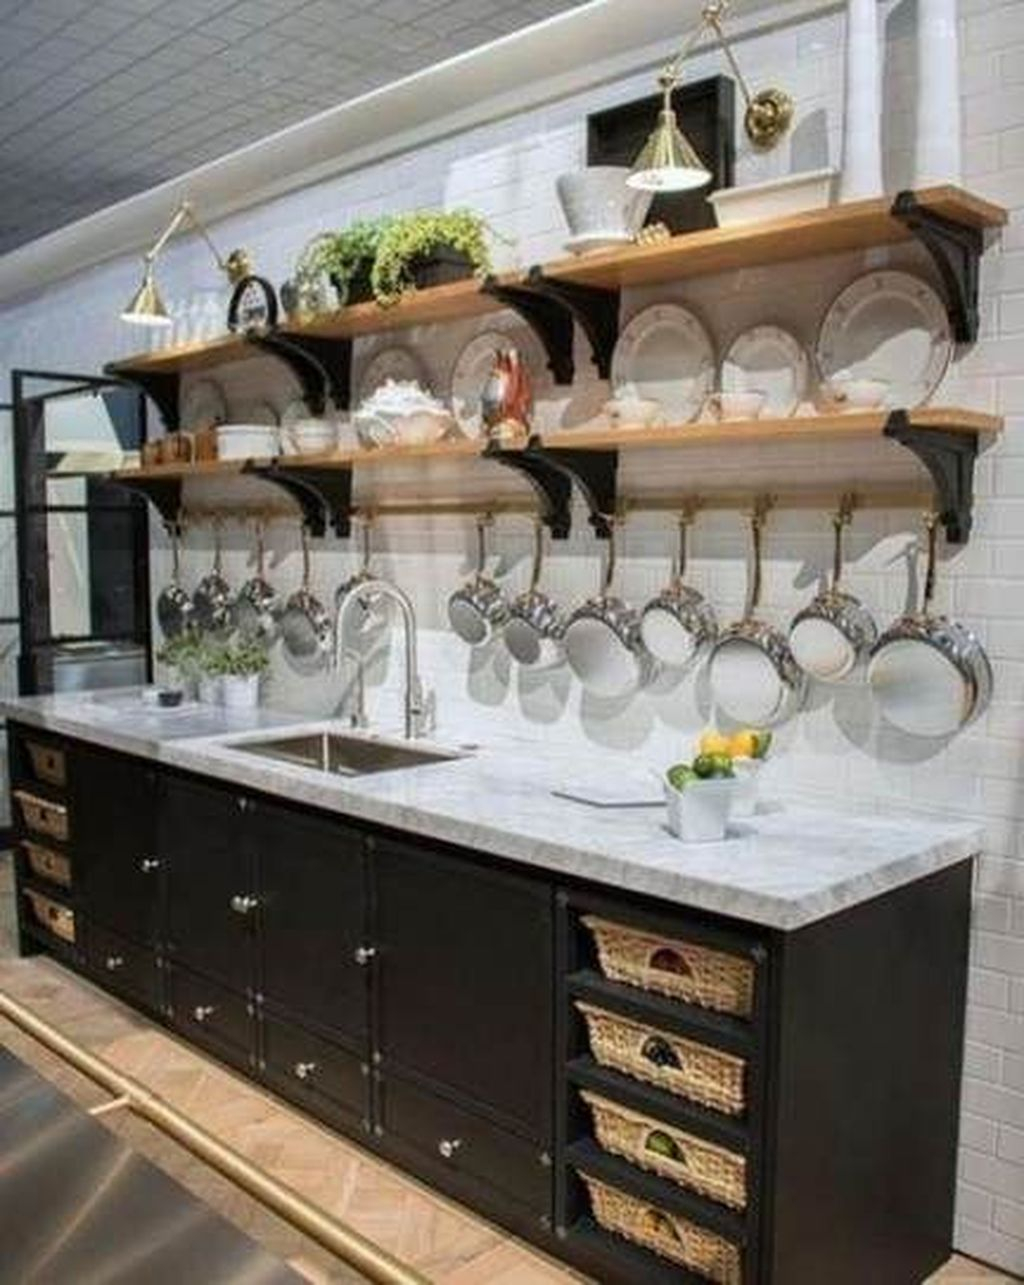 Wonderful Industrial Kitchen Shelf Design Ideas To Organize Your Kitchen18